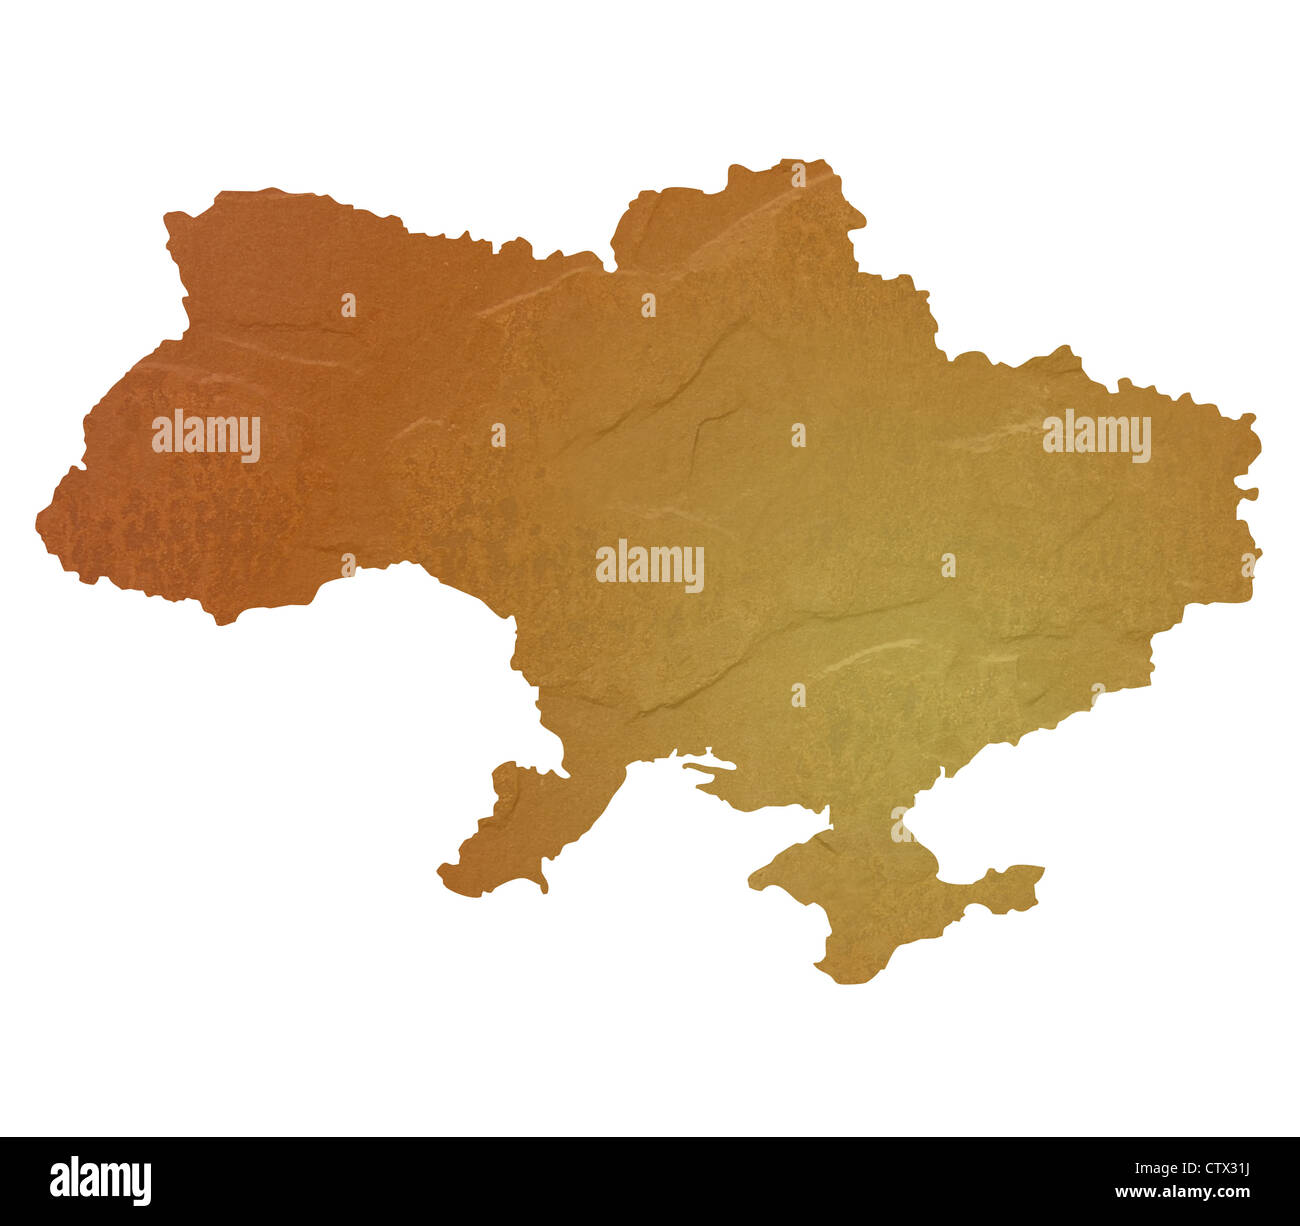 Strukturierte Karte von Ukraine Karte mit braunen Felsen oder Stein Textur, isoliert auf weißem Hintergrund mit Beschneidungspfad. Stockfoto